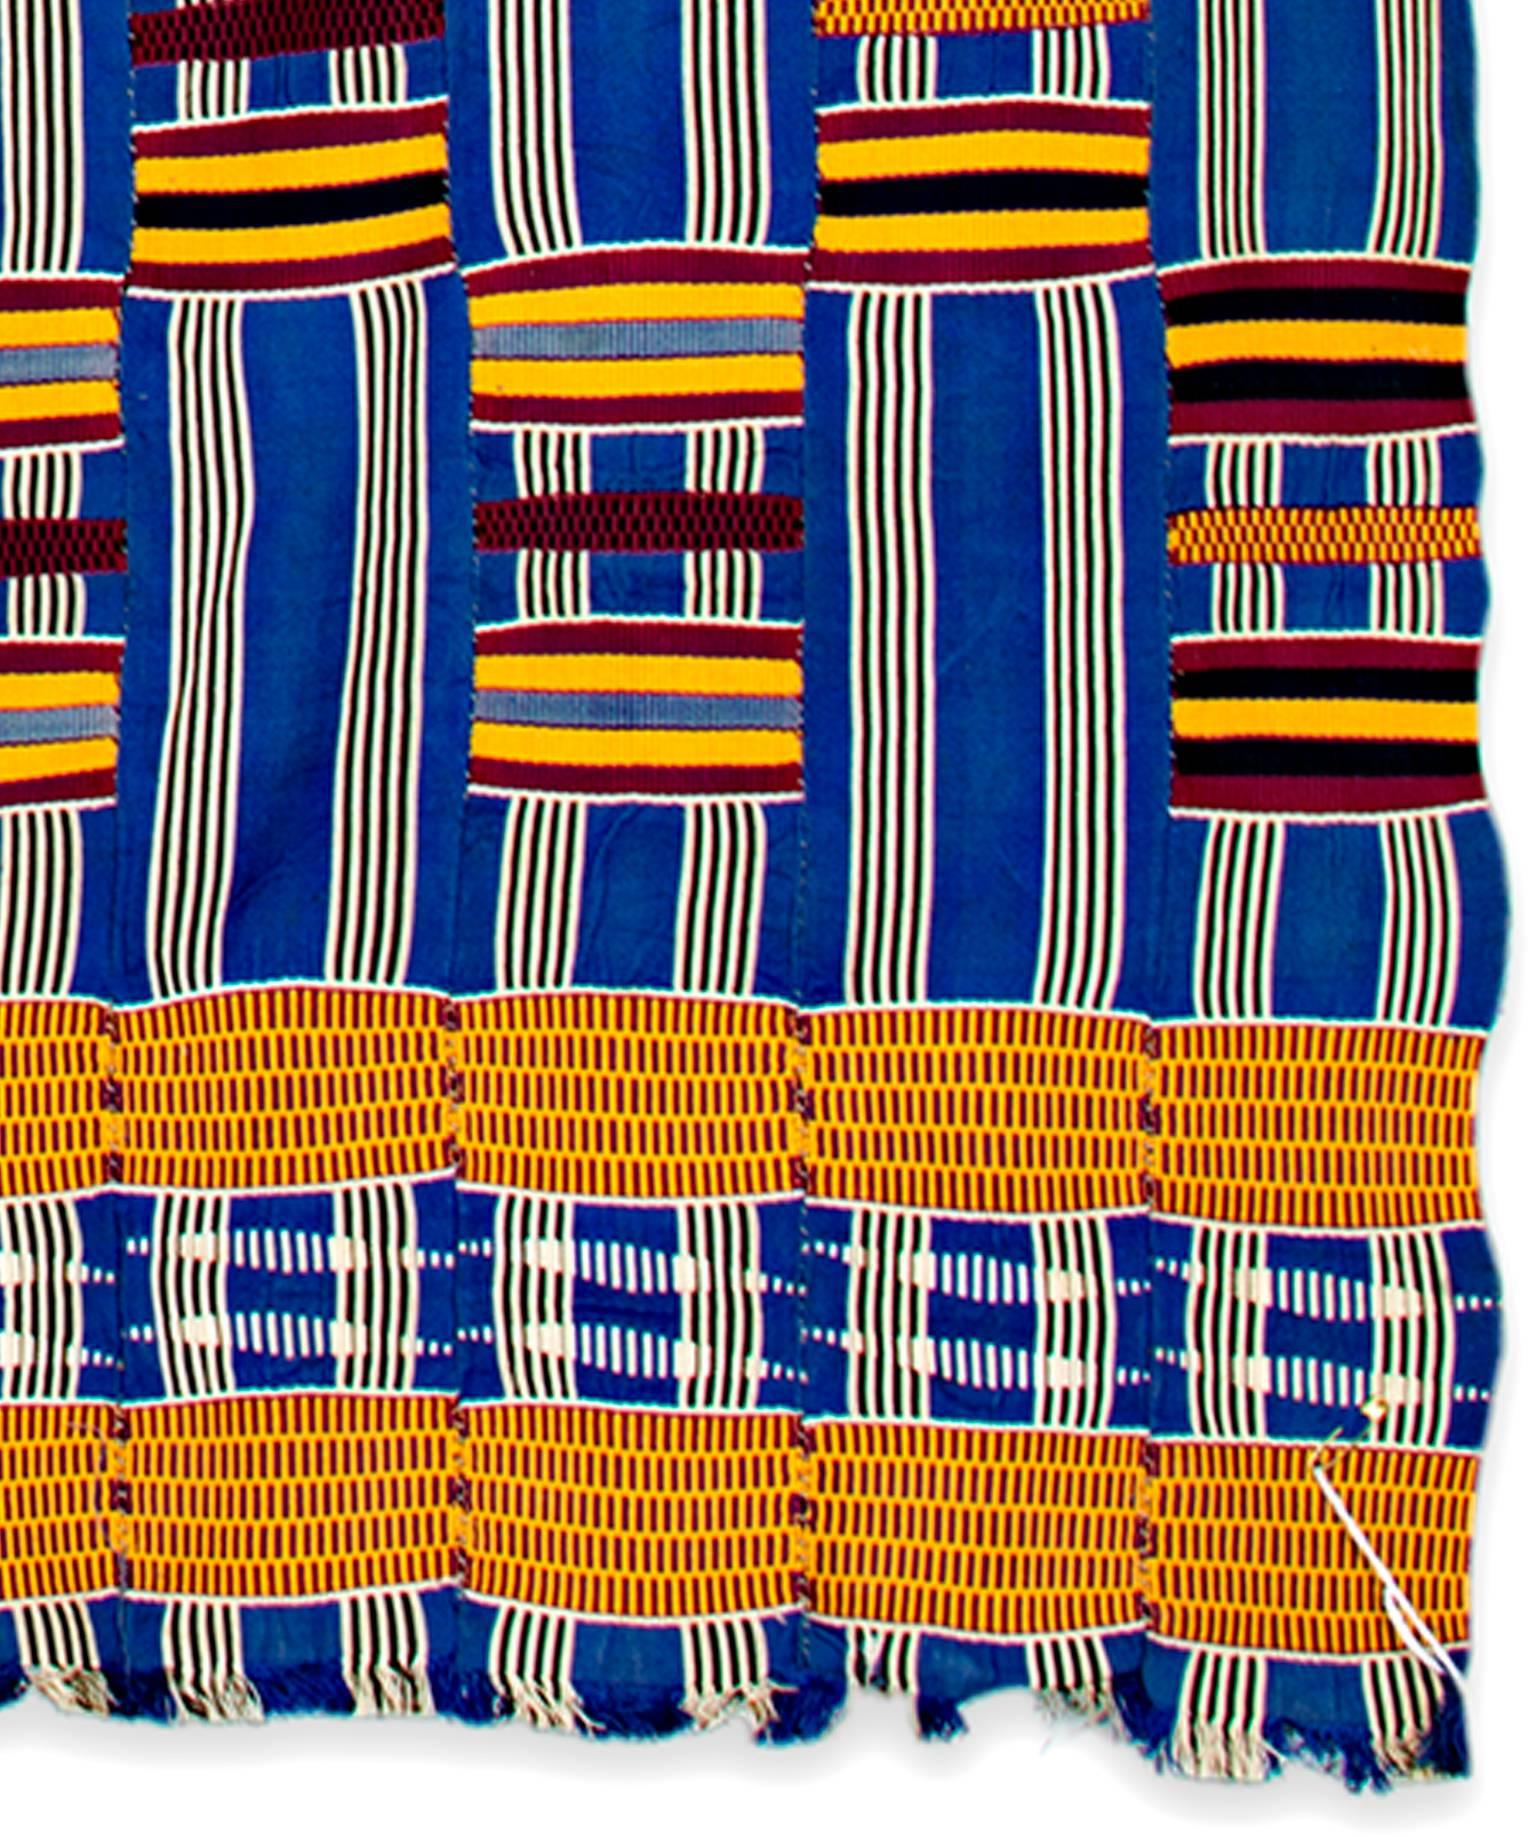 Zu den bekanntesten westafrikanischen Textilien gehört der Kente-Stoff, der von den Ewe- und Asante-Völkern in Ghana gewebt wird. Das Wort Kente wird von den Asante nicht verwendet; es könnte vom Fante-Wort Kenten (